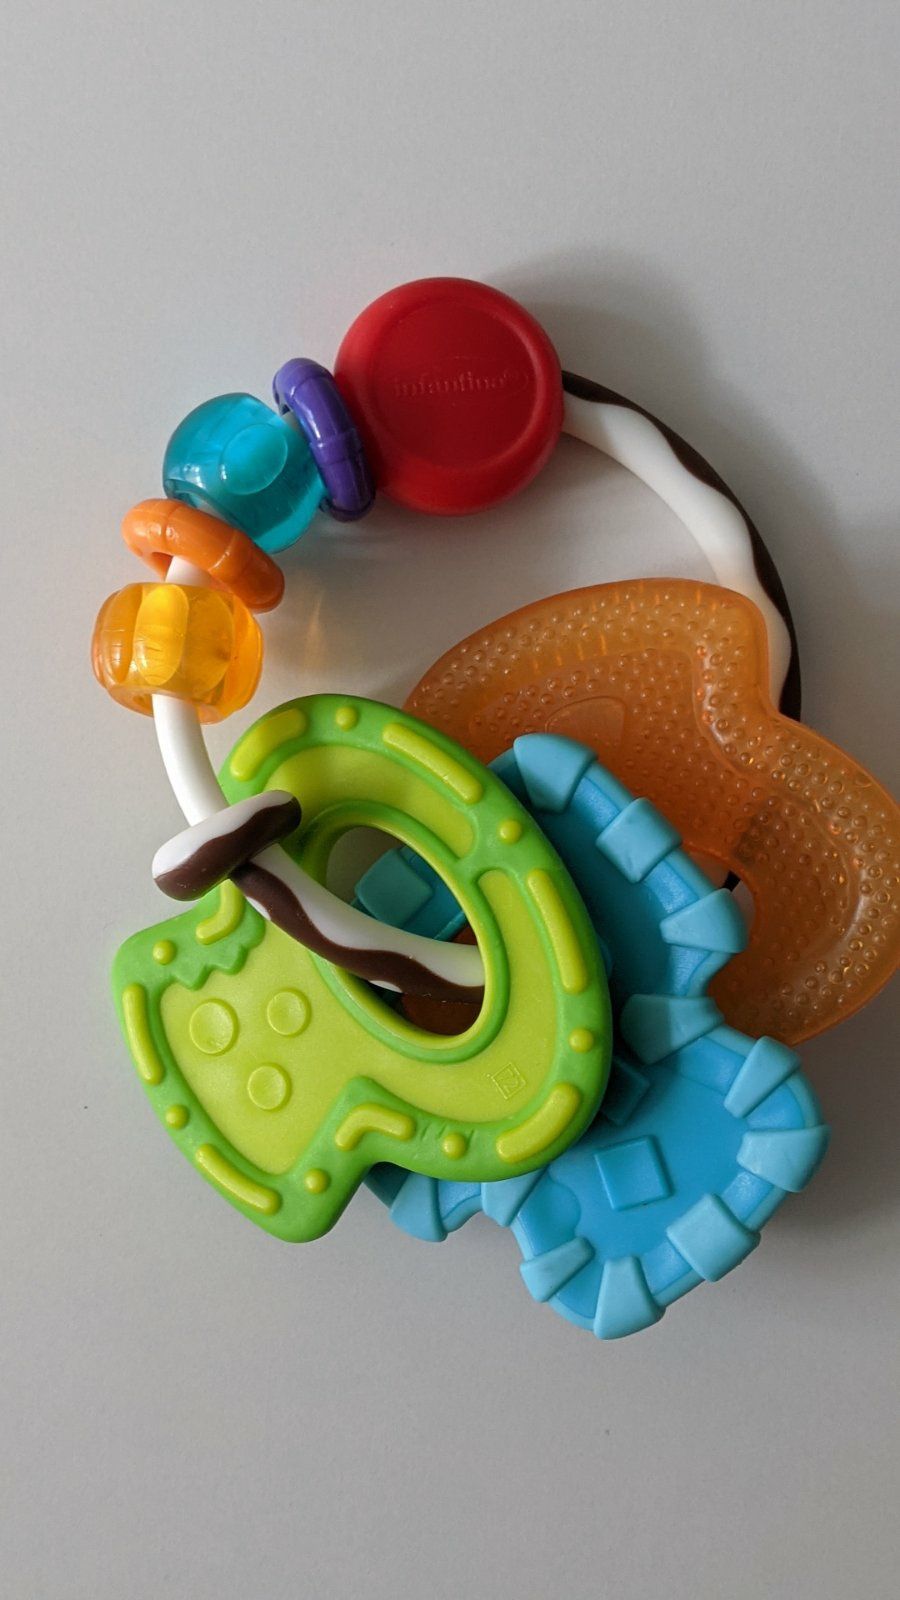 Іграшки для малюків, брязкальця Chicco, Infantino.